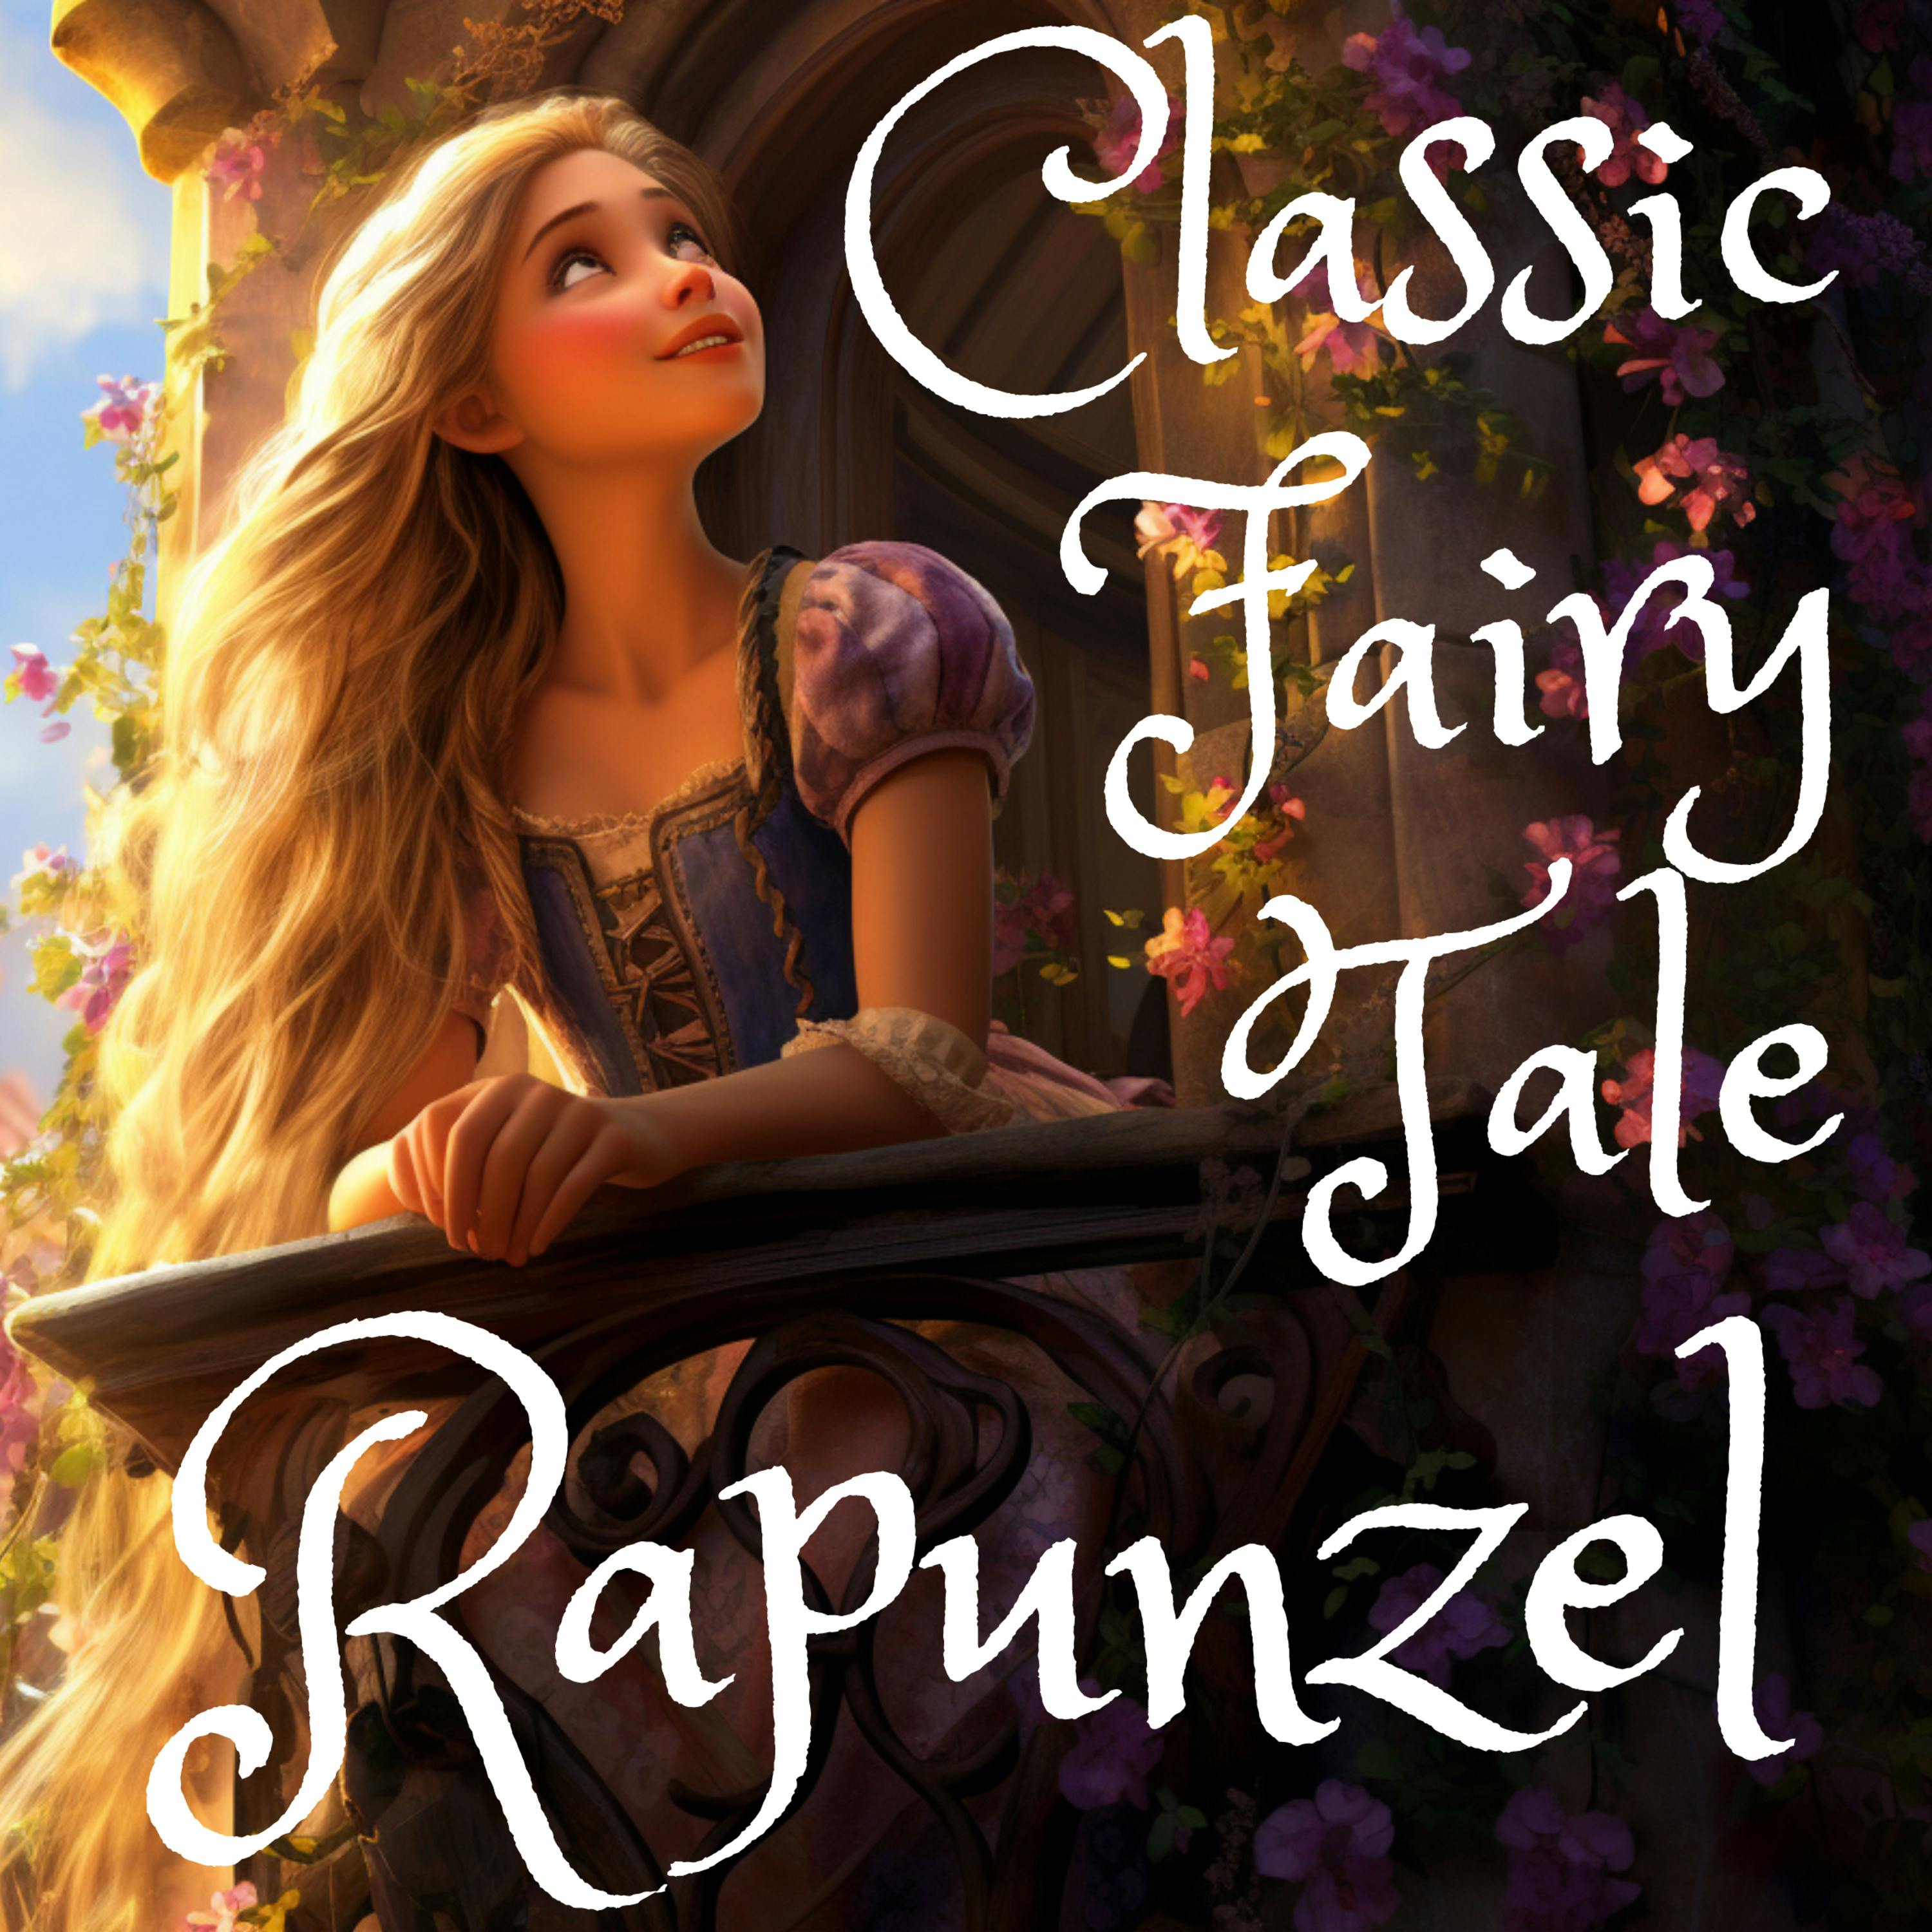 Bedtime Story: Rapunzel - The Original Grimm Fairytale